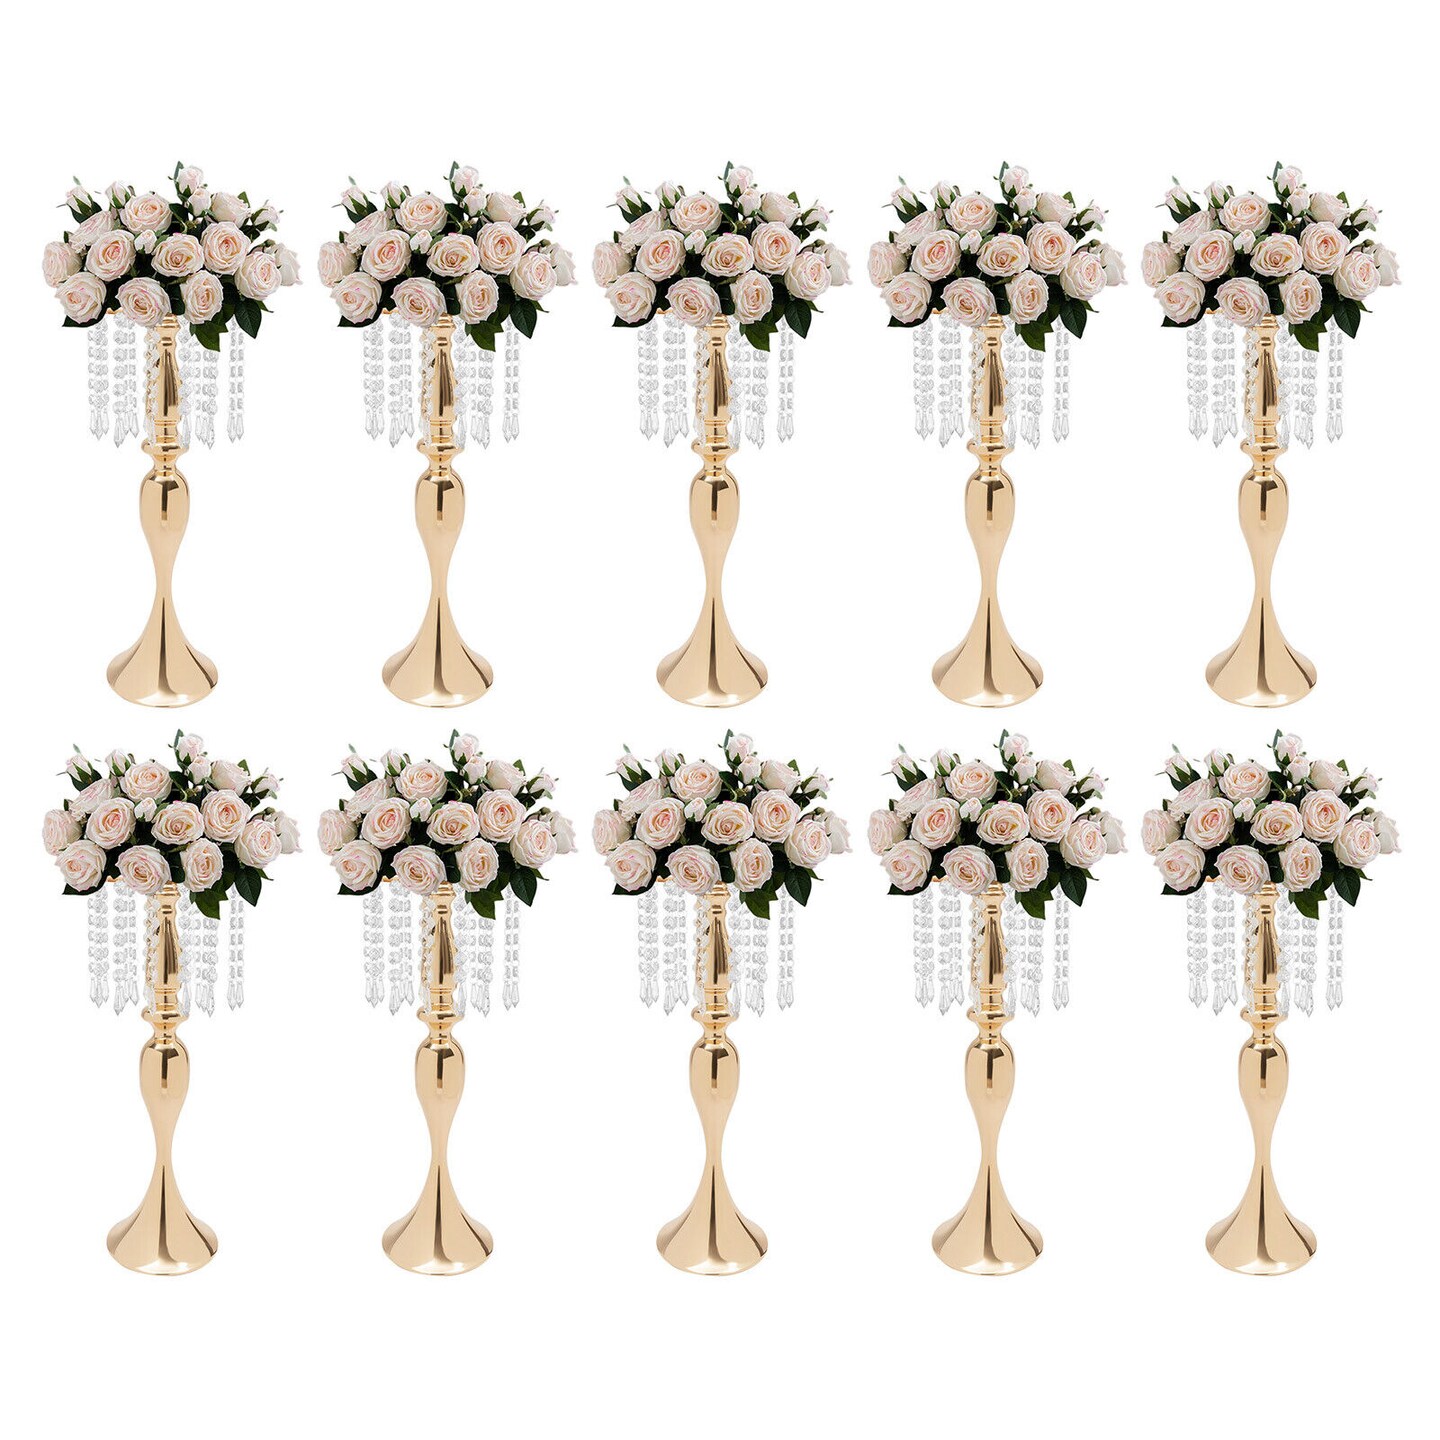 Kitcheniva 10 Flower Vase Stand Centerpieces for Wedding